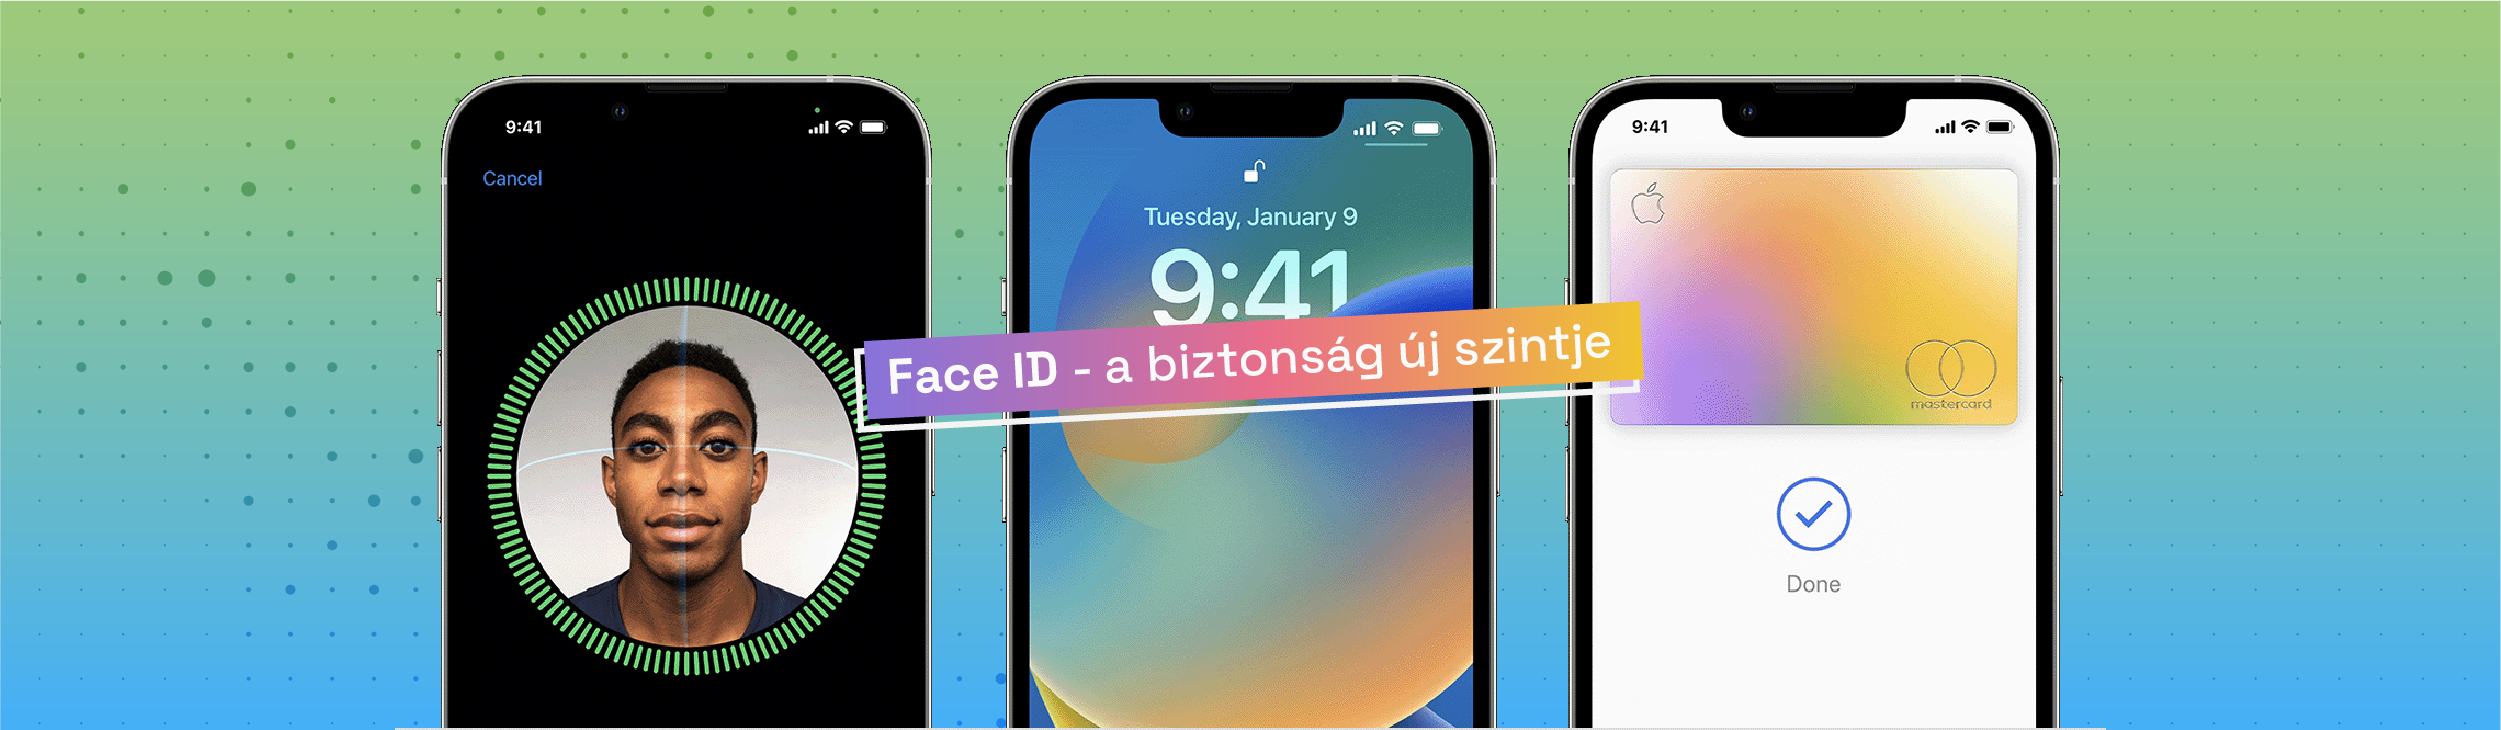 Face ID - a biztonság új szintje